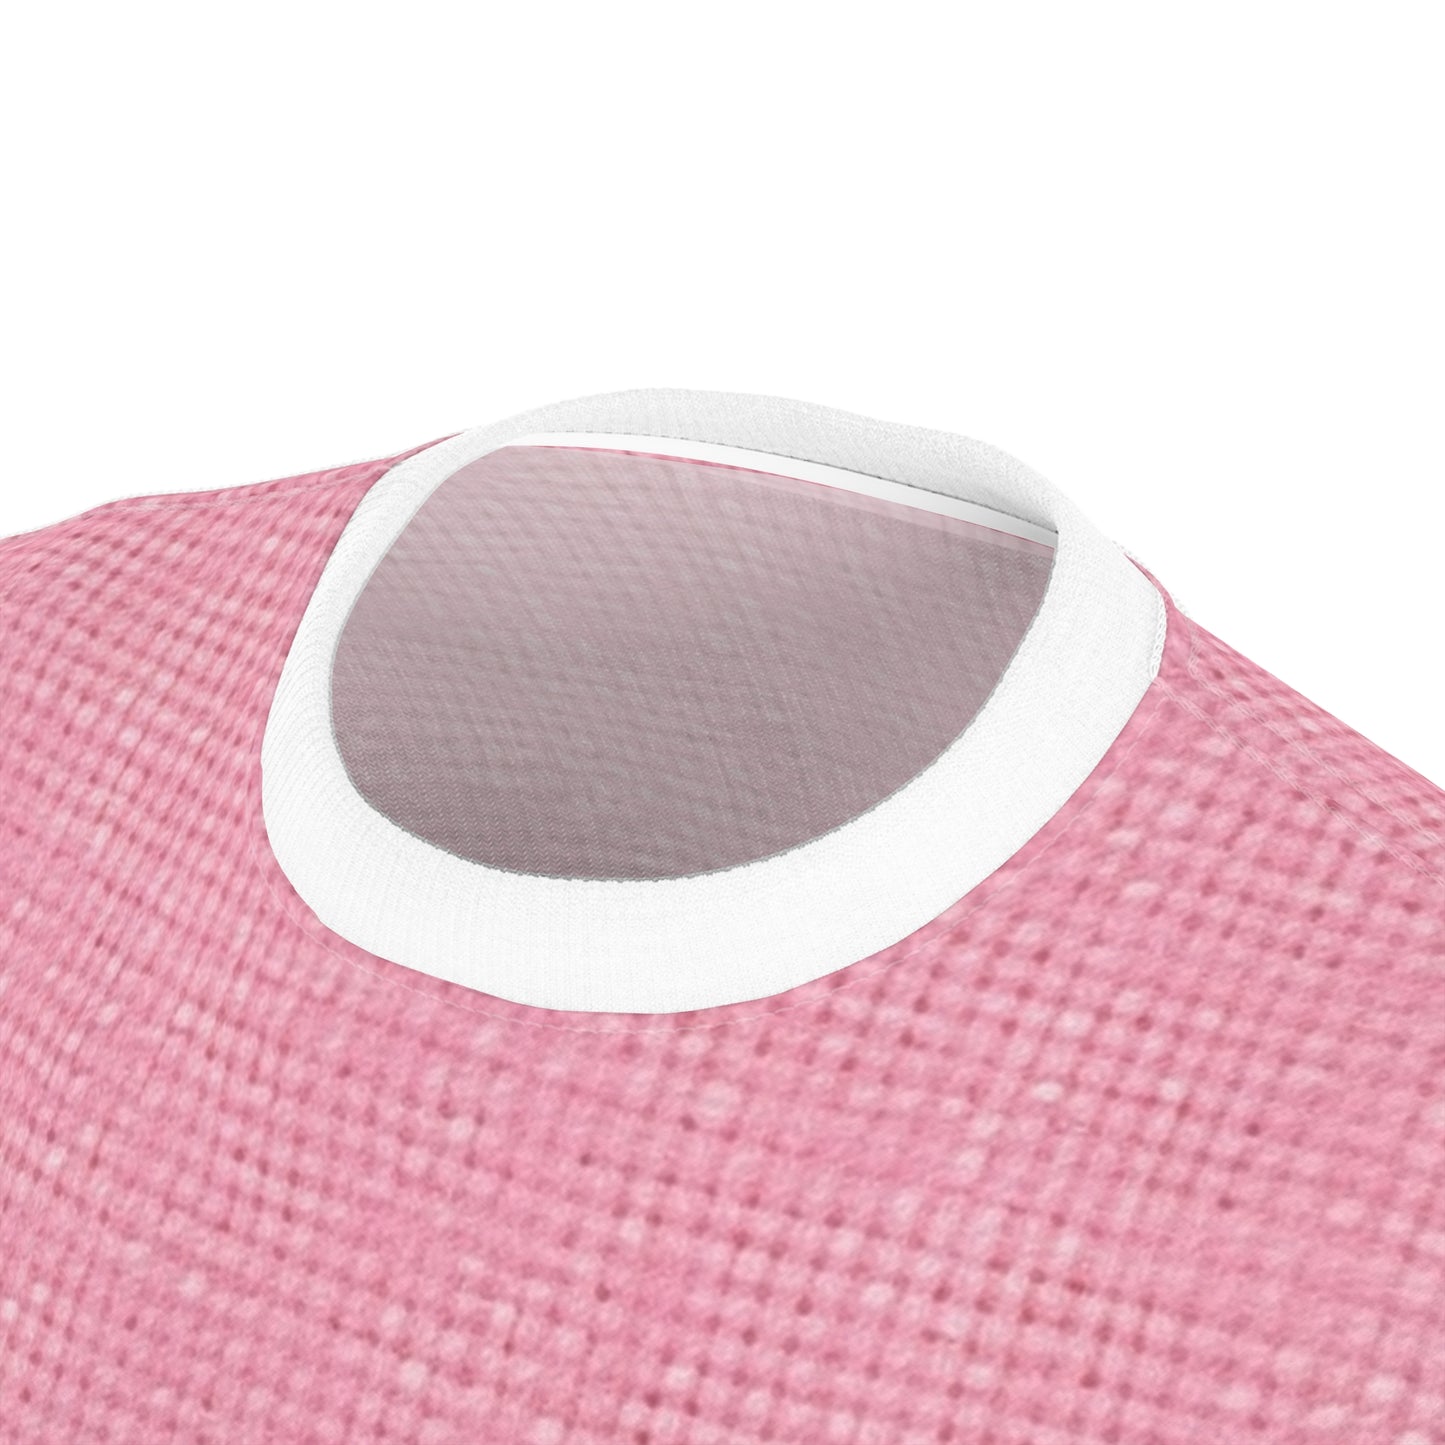 Pastel Rose Pink: Denim-Inspired, Refreshing Fabric Design - Unisex Cut & Sew Tee (AOP)